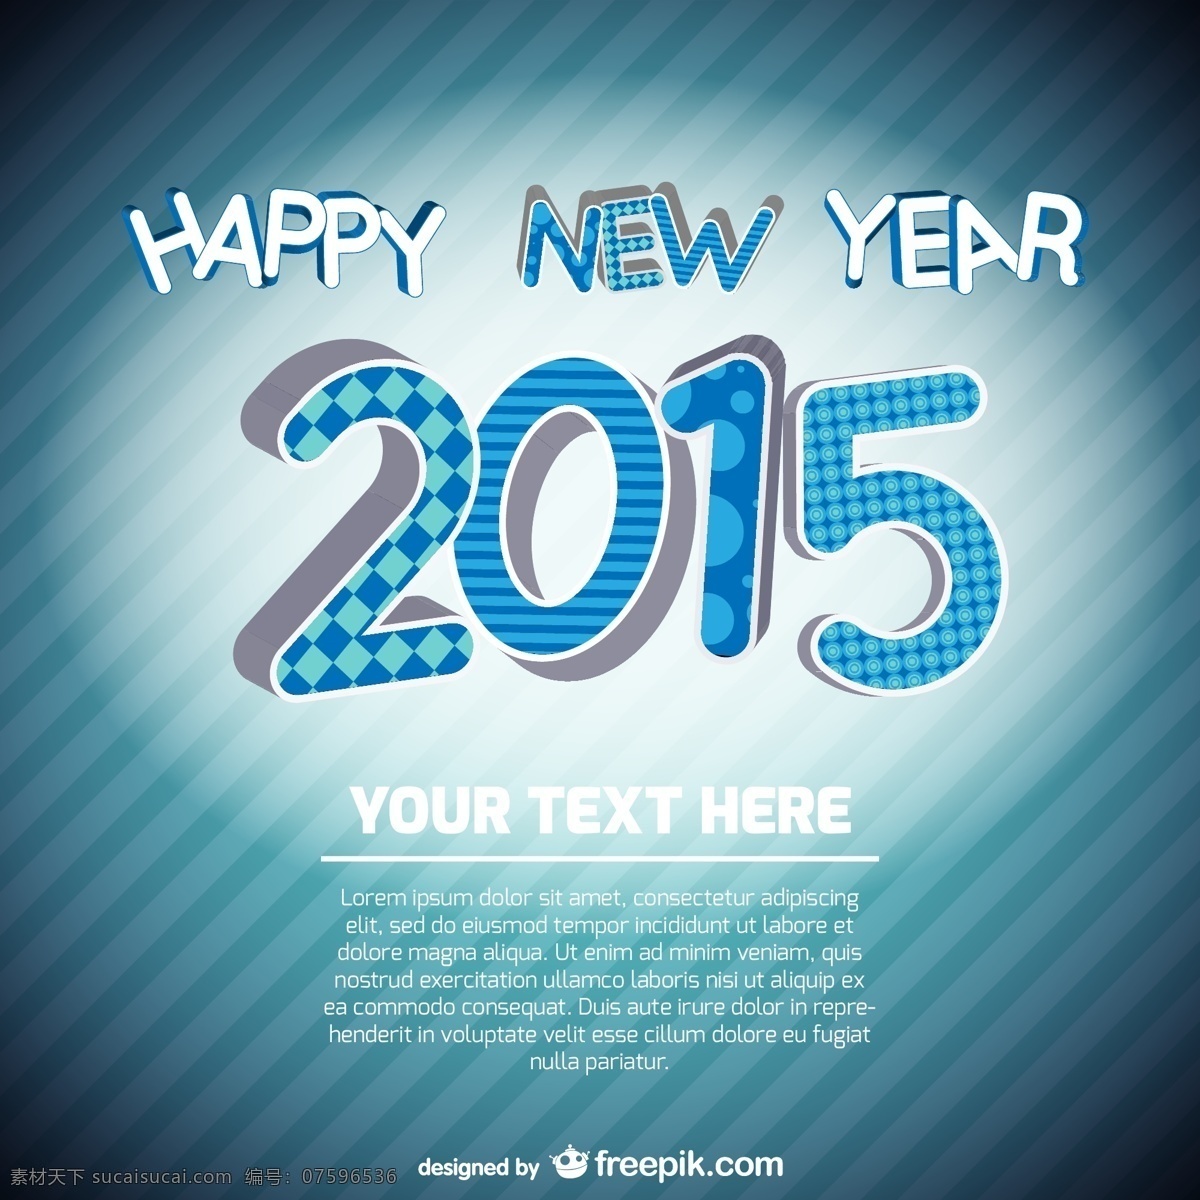 新 年 卡 模板 卡片 新年快乐 新的一年 2015 快乐 新的一年卡 卡片模板 青色 天蓝色